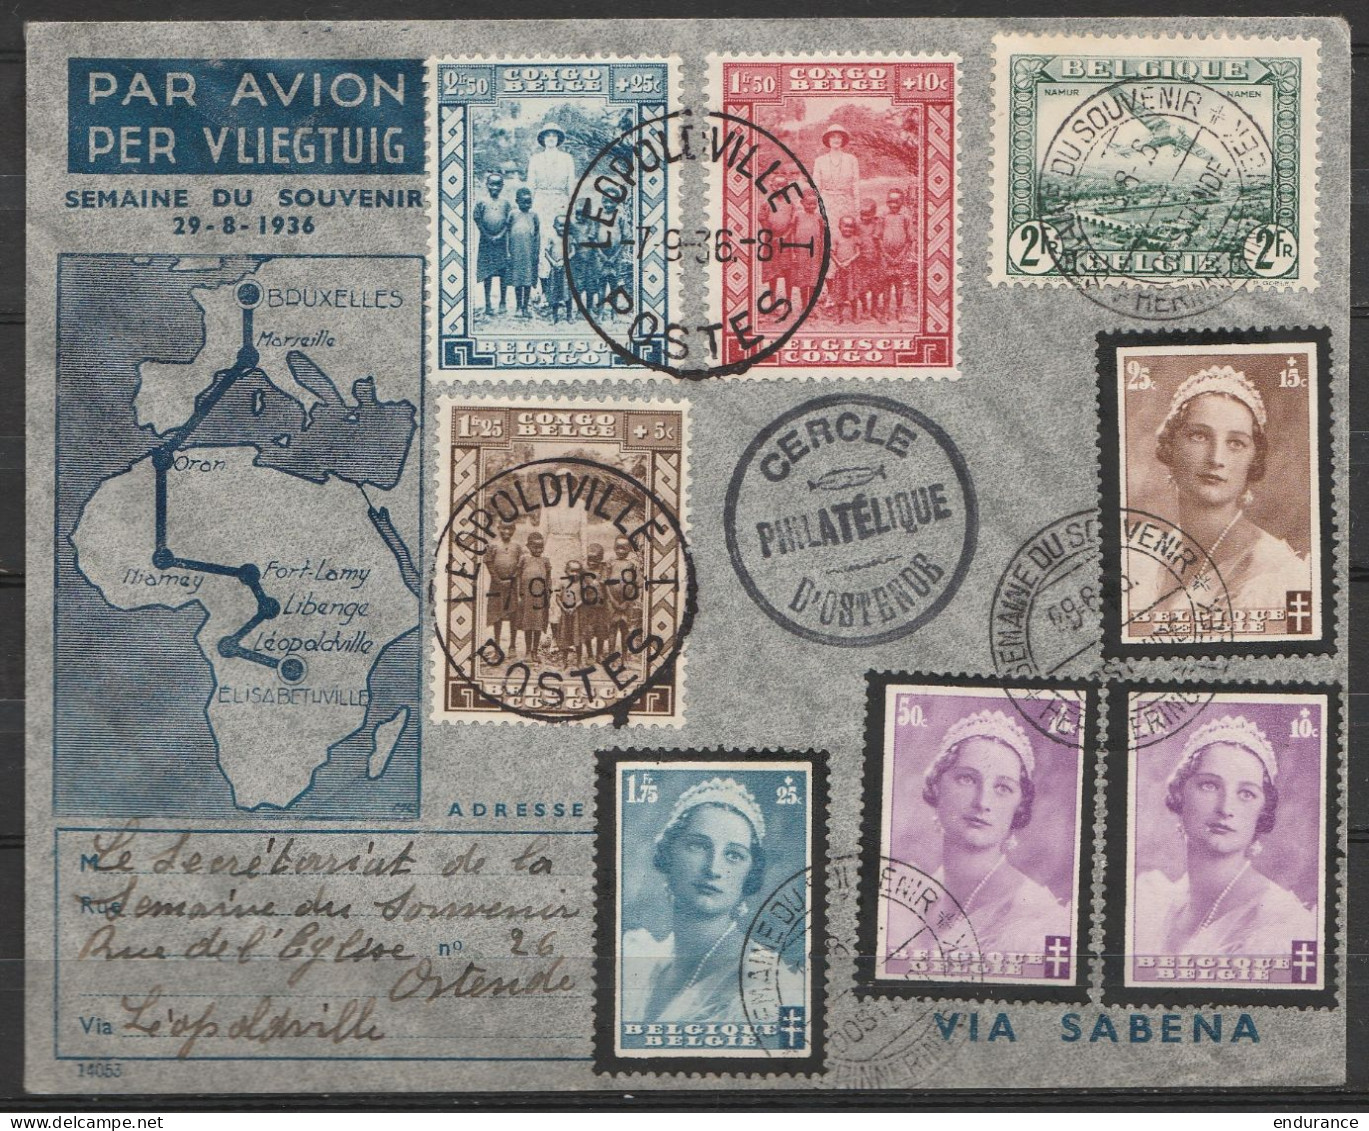 L. Par Avion "Semaine Du Souvenir" Affr. N°412+417+414x2 + PA3 Càd "SEMAINE DU SOUVENIR /29-8-1936/ OSTENDE" Pour E/V Vi - Storia Postale